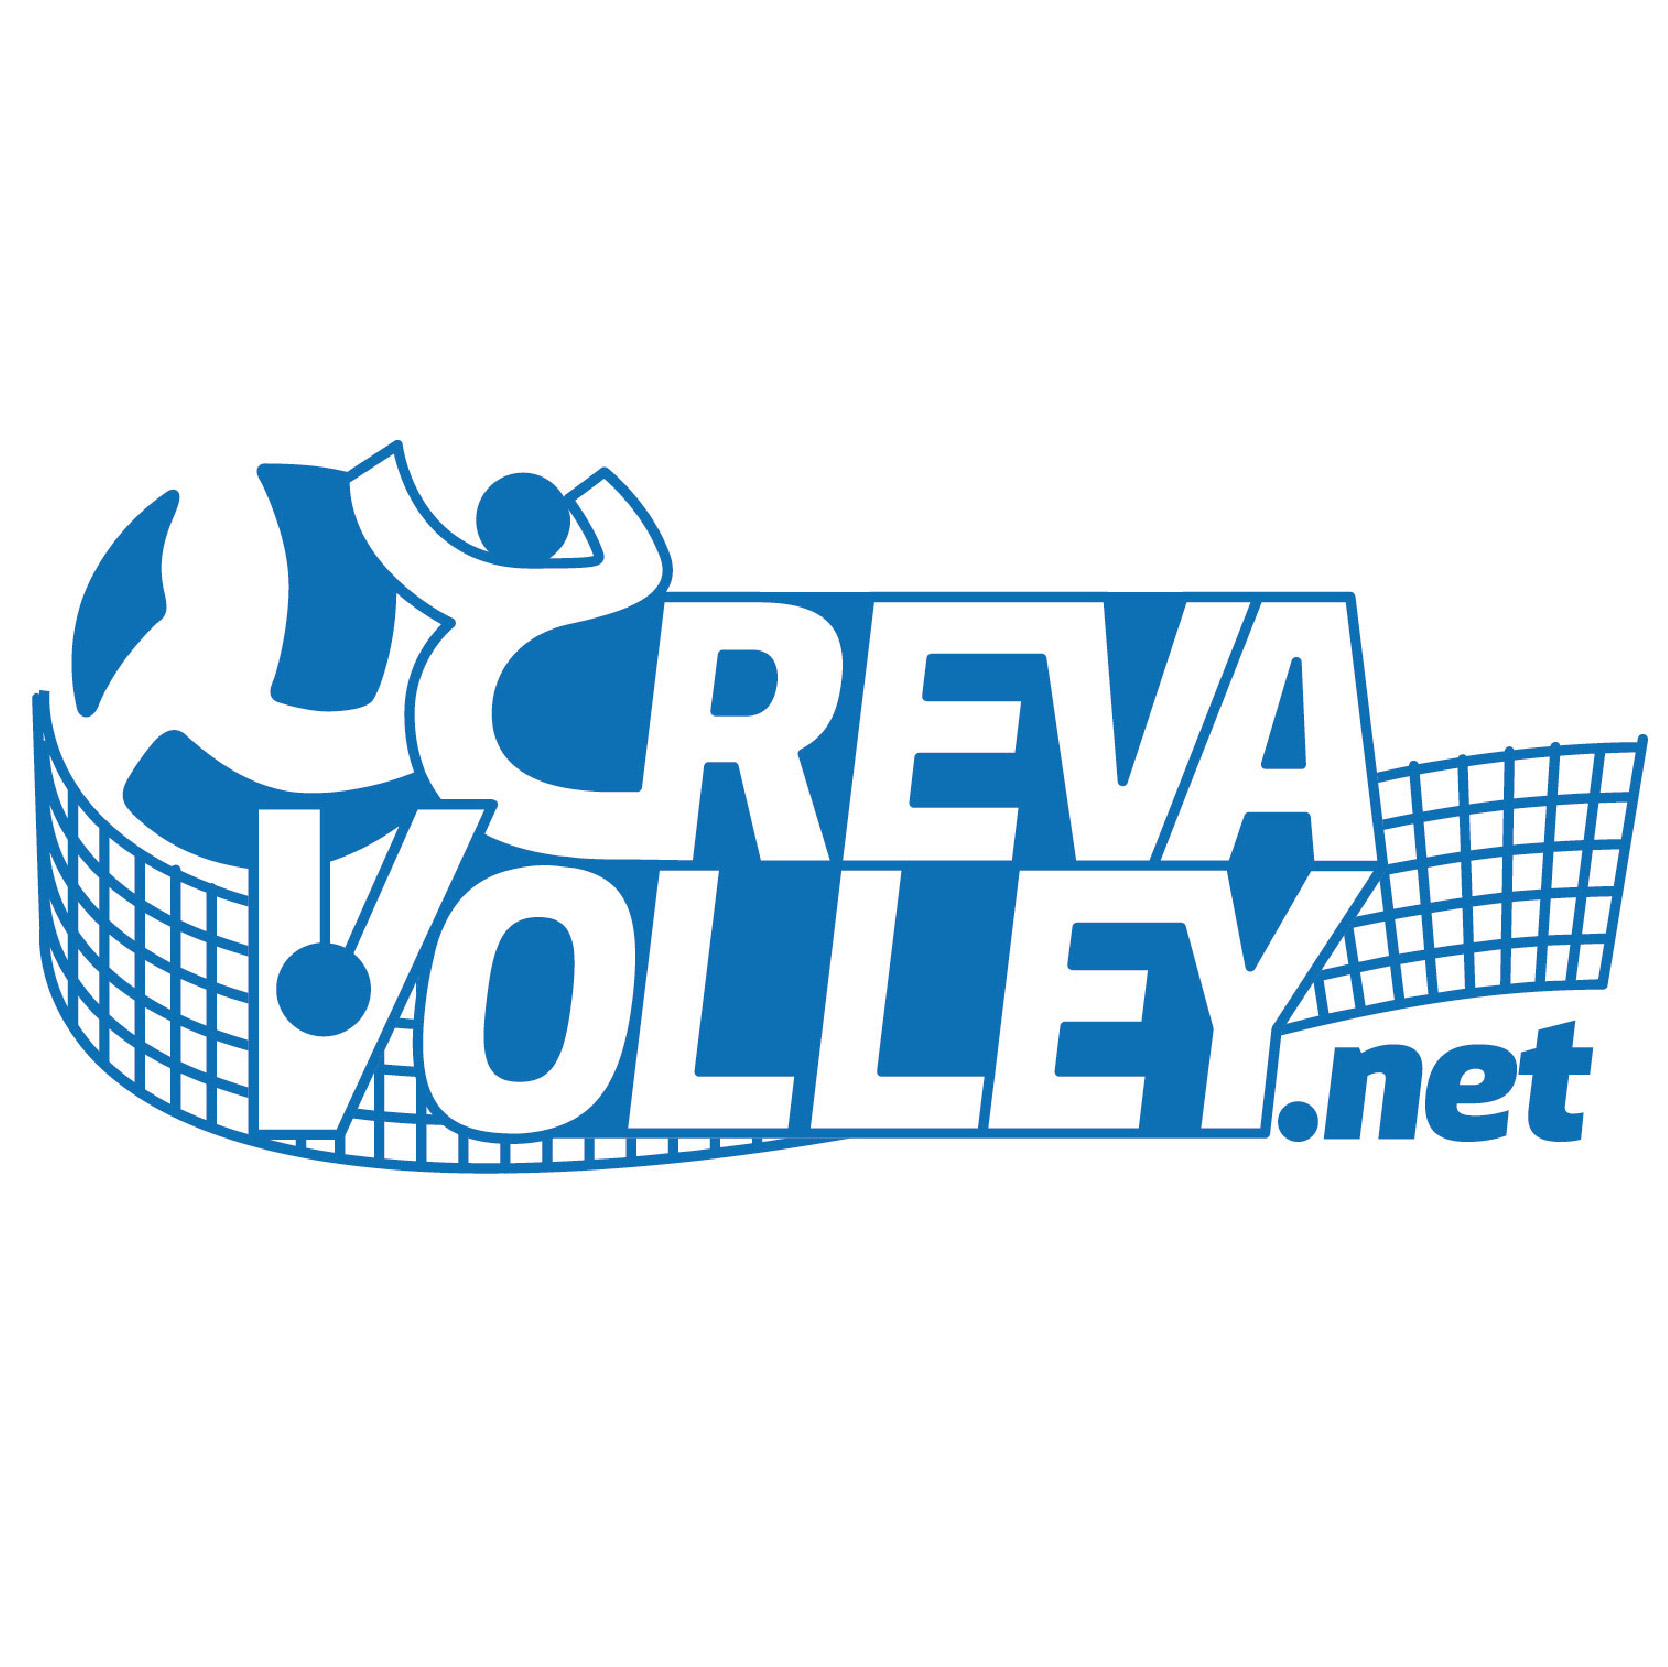 creva volley logo x sito.jpg